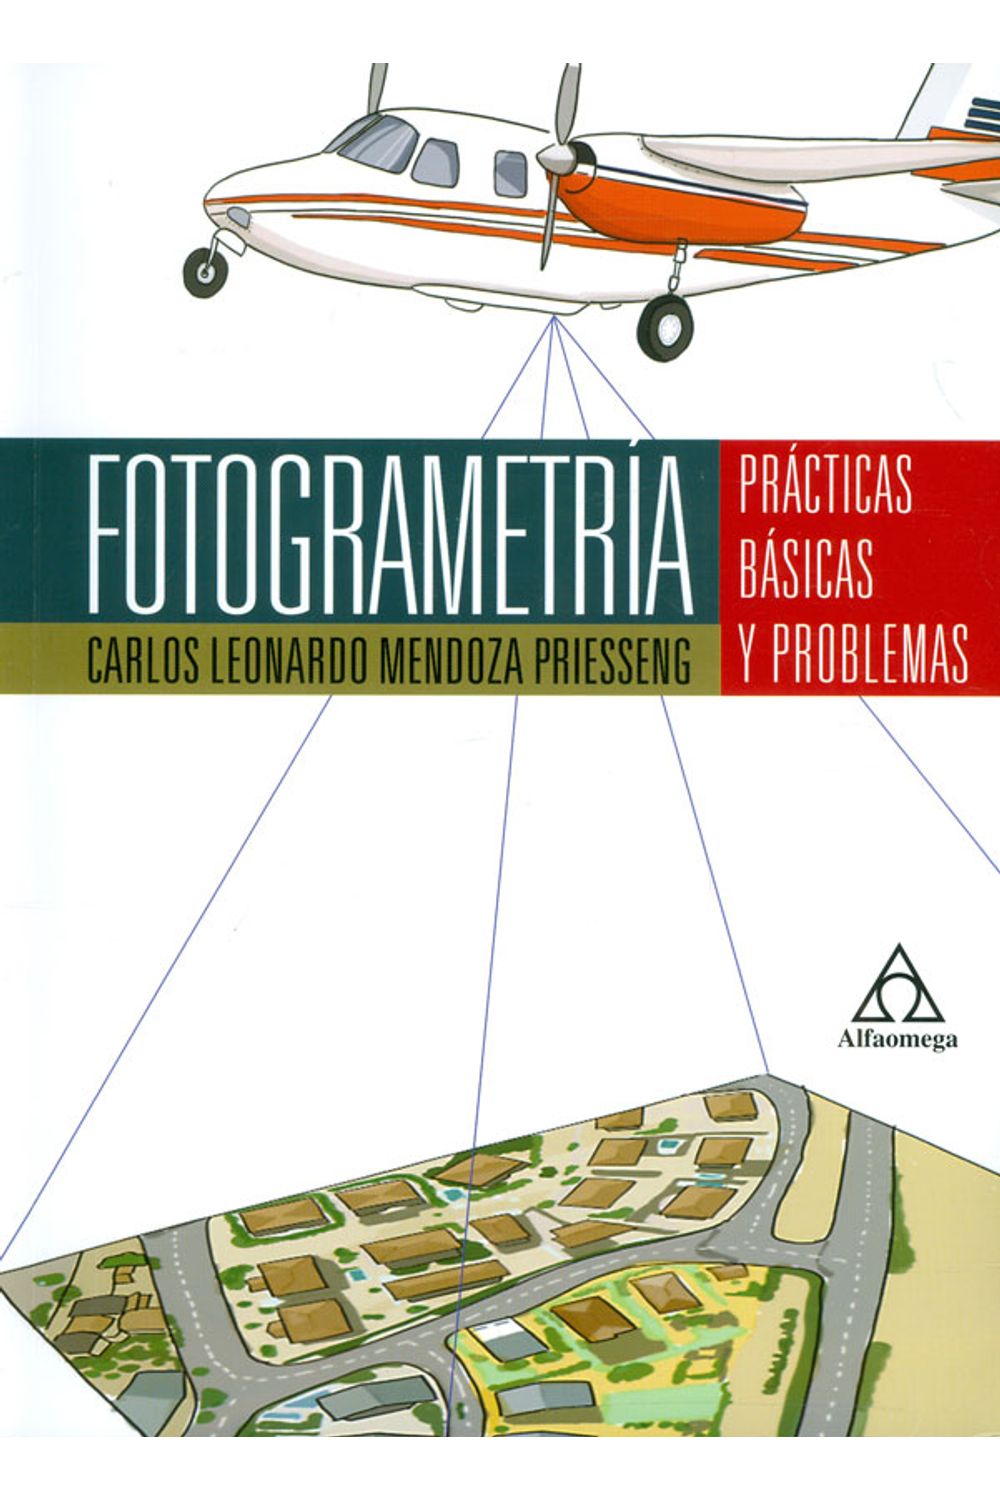 fotogeometria-practicas-basica-9789587784237-alfa